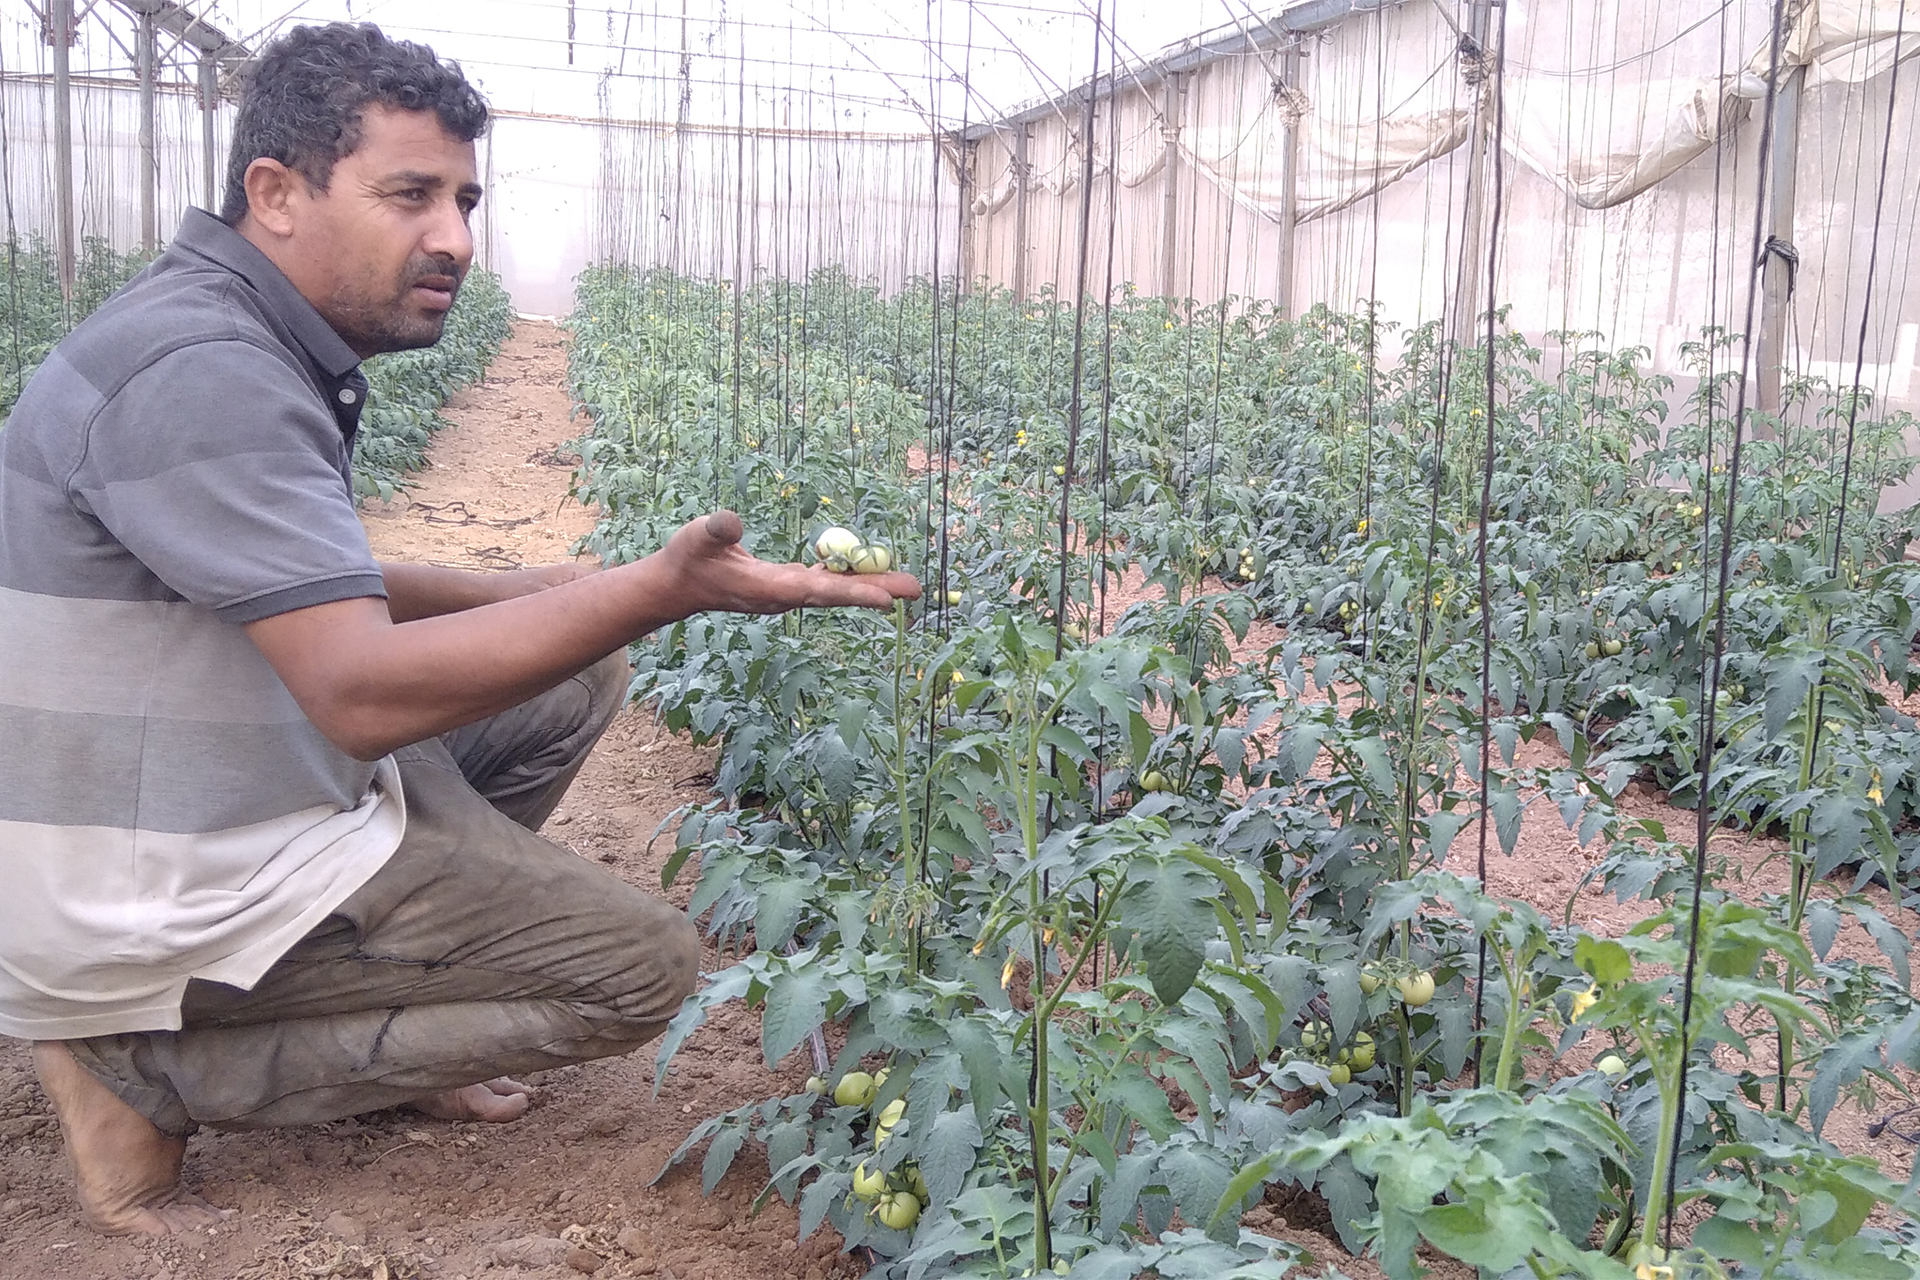 كيف يدمر العدوان الإسرائيلي القطاع الزراعي في غزة؟ | اقتصاد – البوكس نيوز